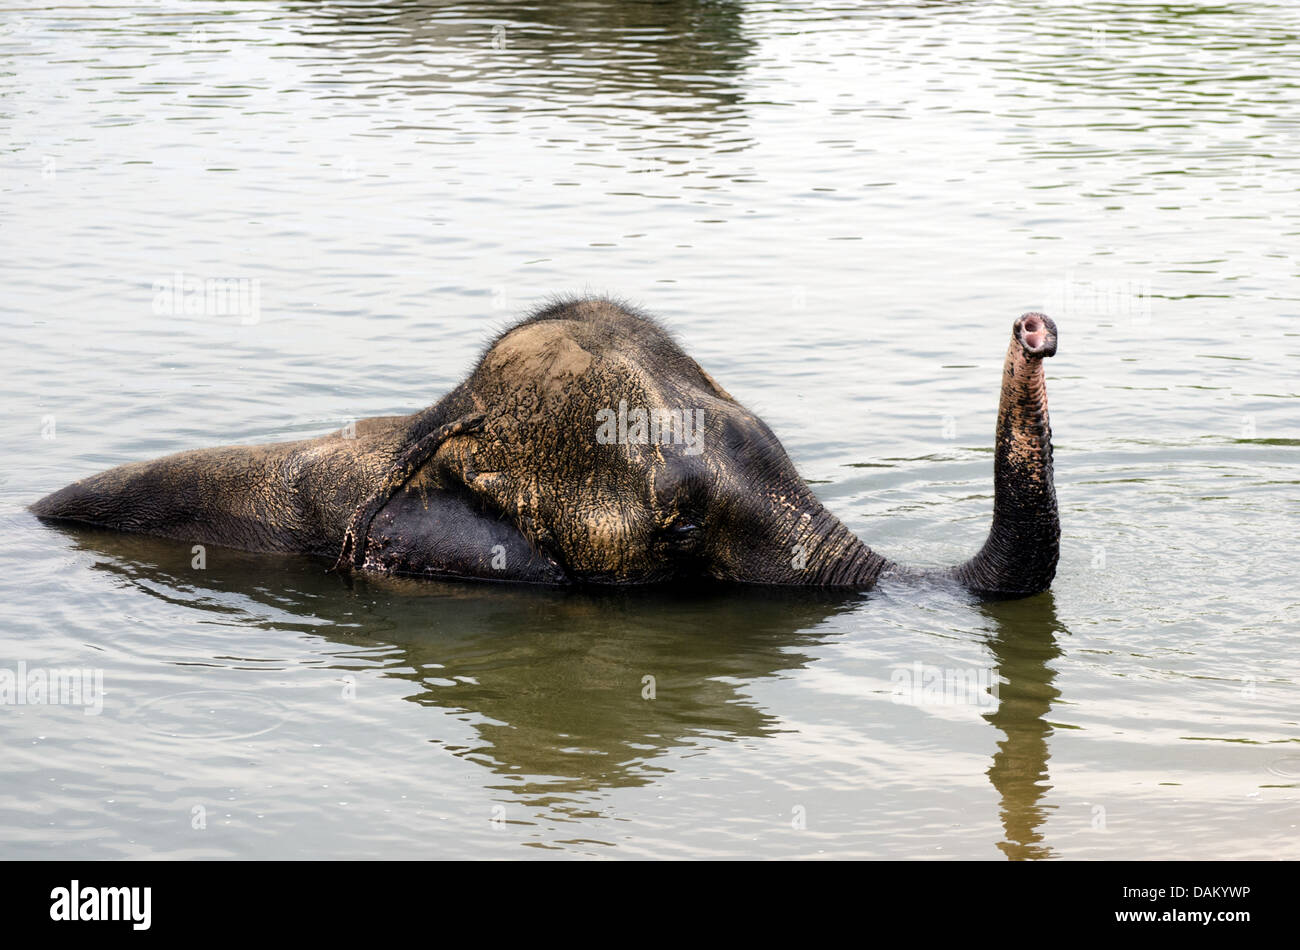 Asiatic elephant, Asian elephant (Elephas maximus), bathing in a lake, India, Madhya Pradesh, Bandhavgarh National Park Stock Photo